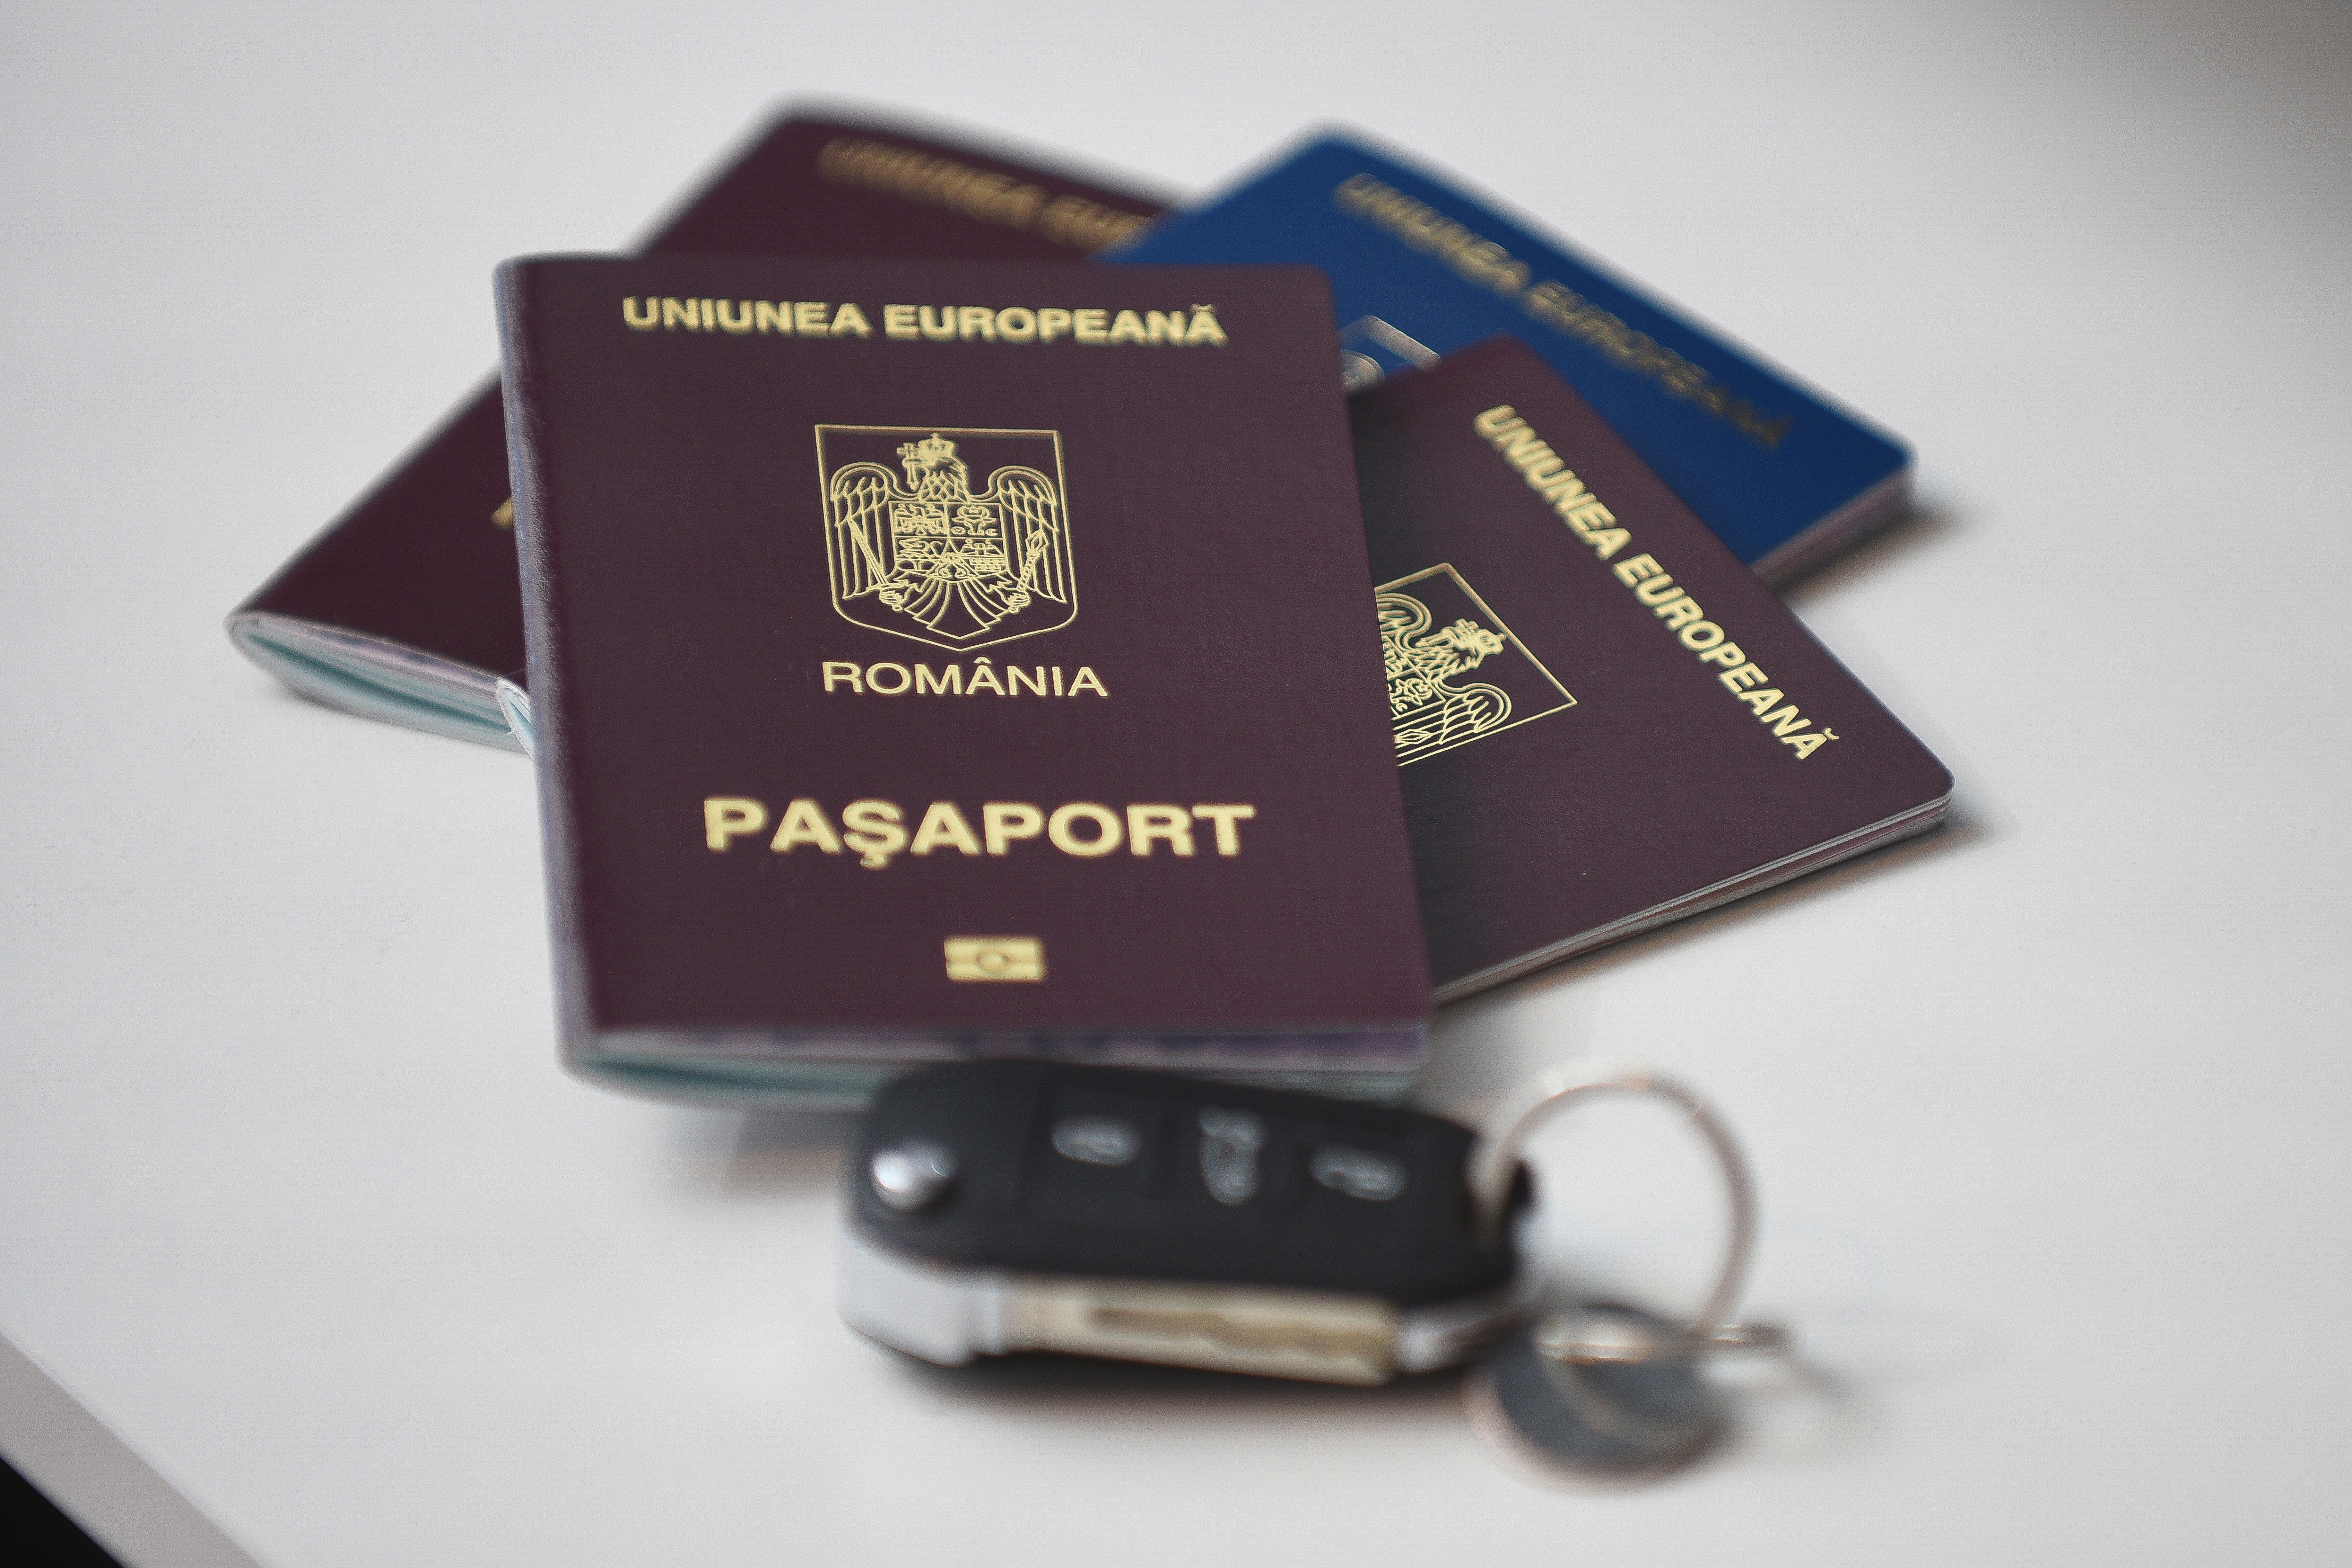 Румынские паспорта, с которыми иностранцы могут получить много преимуществ